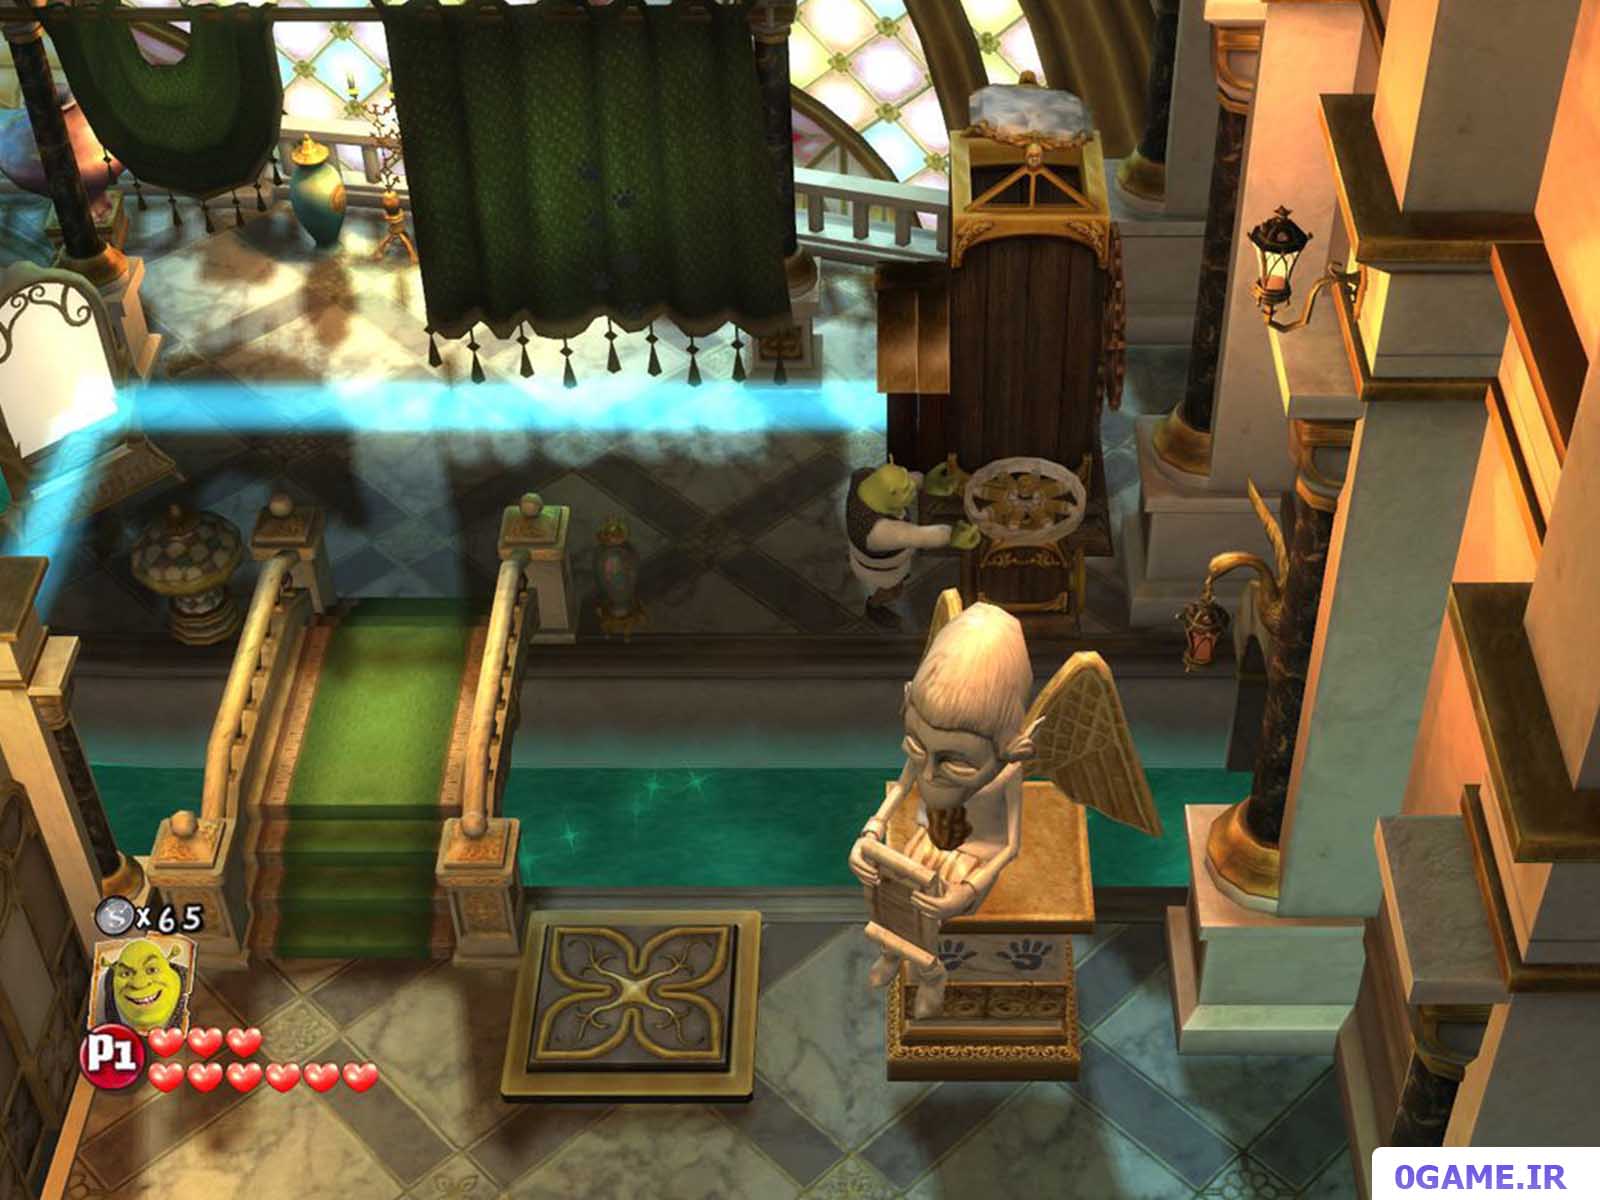 دانلود بازی شرک 4 (Shrek Forever After) نسخه کامل برای کامپیوتر